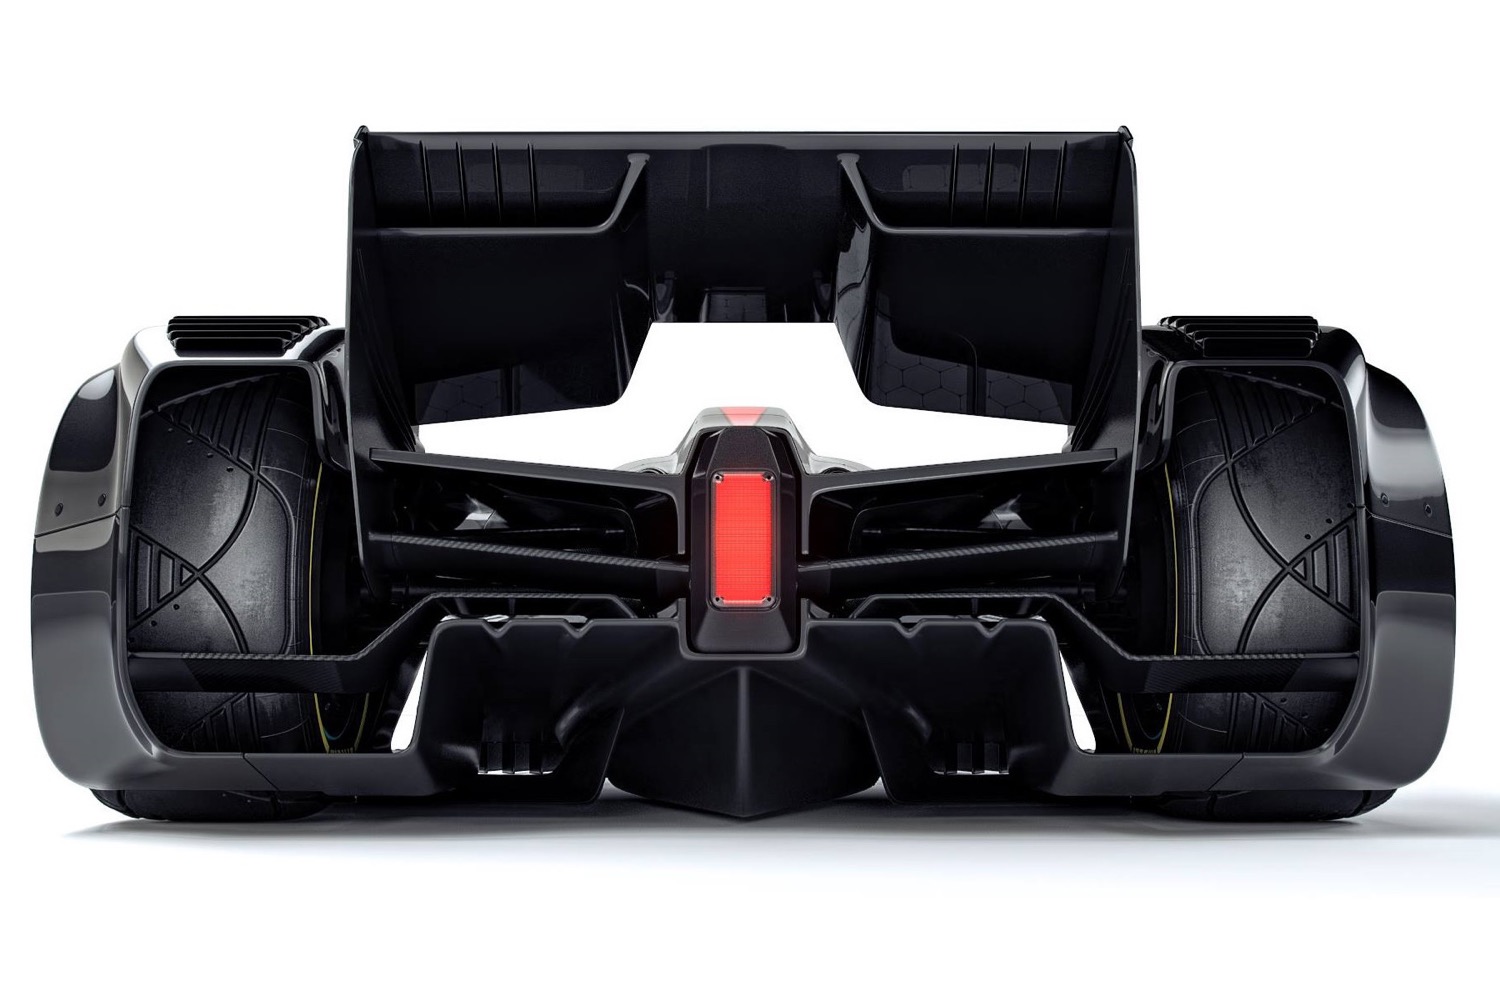 McLaren MP4-X concept